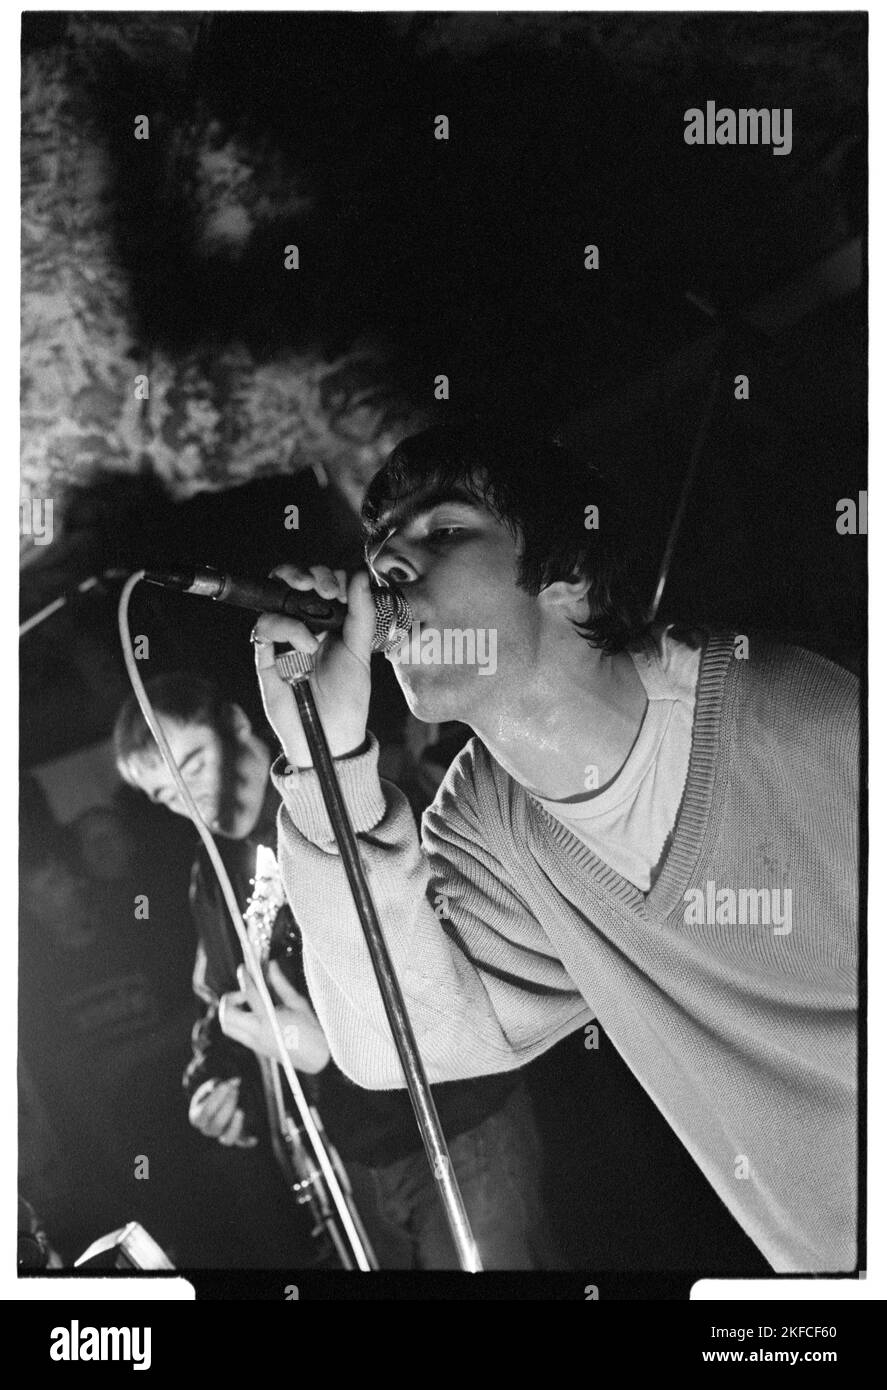 OASIS, FIRST UK HEADLINE TOUR, 1994: Liam Gallagher of Oasis at the Legendary TJs a Newport, Galles, 3 maggio 1994. Fotografia: Rob Watkins. Questo è stato il primo tour nazionale della band a sostegno del loro secondo singolo Shakermaker. Foto Stock